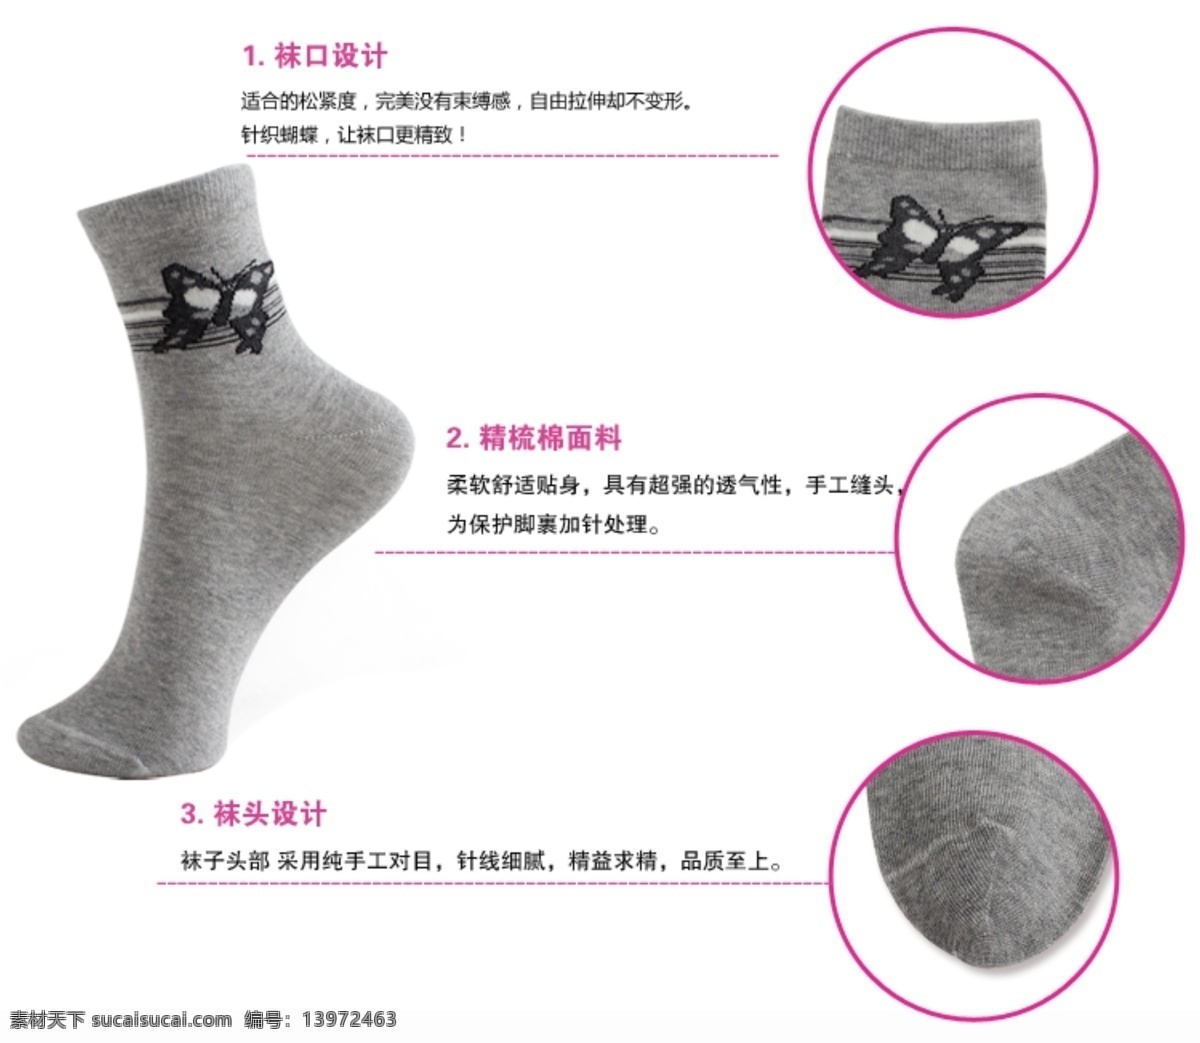 淘宝产品 袜子 网页模板 源文件 中文模板 描述 模板下载 袜子描述 淘宝袜子排版 男式袜子 短袜 网页素材